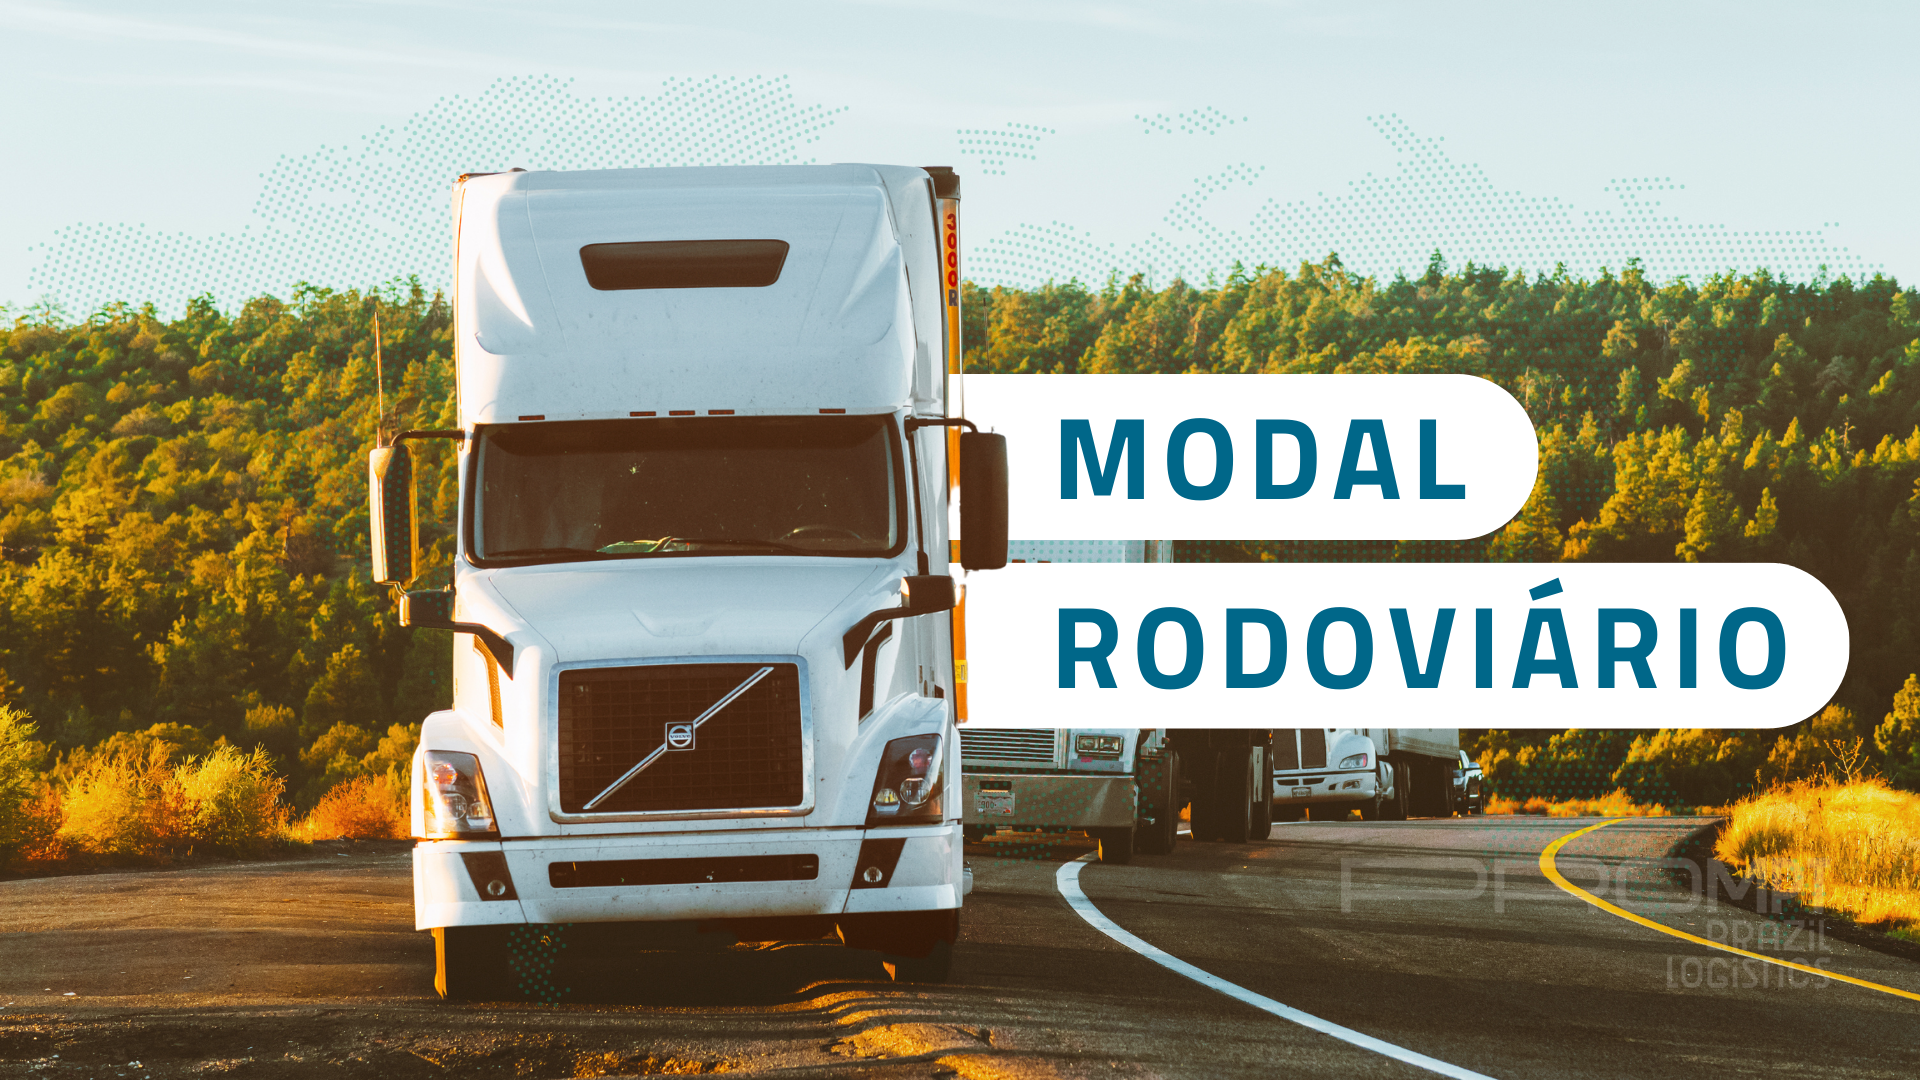 MODAL RODOVIÁRIO veja vantagens e desvantages do modal quais as formas de transporte de cargas no rodoviário e como enviar uma carga em um caminhão prompt brazil logistics logistica integrada para negócios